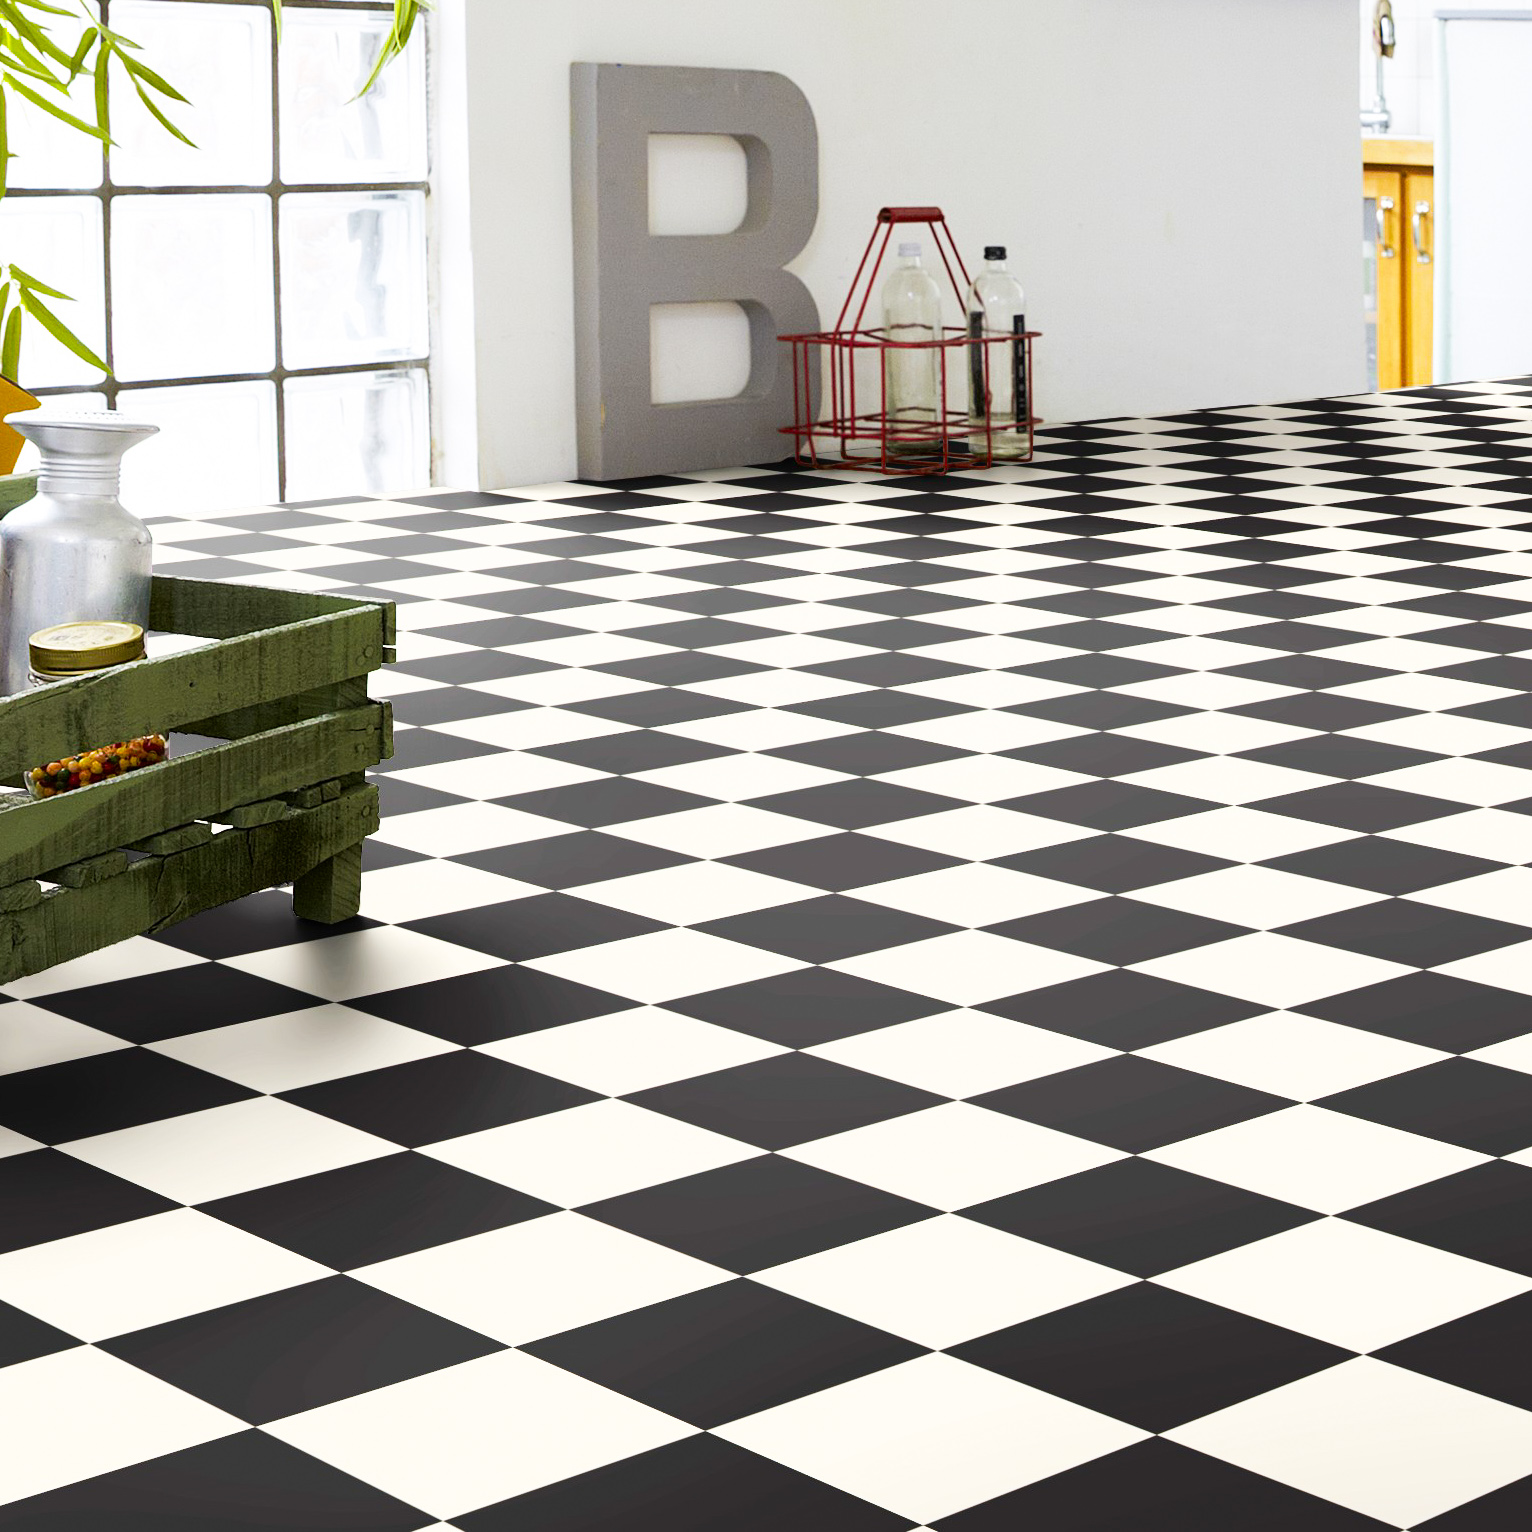 Raumbild eines PVC Bodens mit schwarzen und weißen Fliesen im Schachbrett-Muster